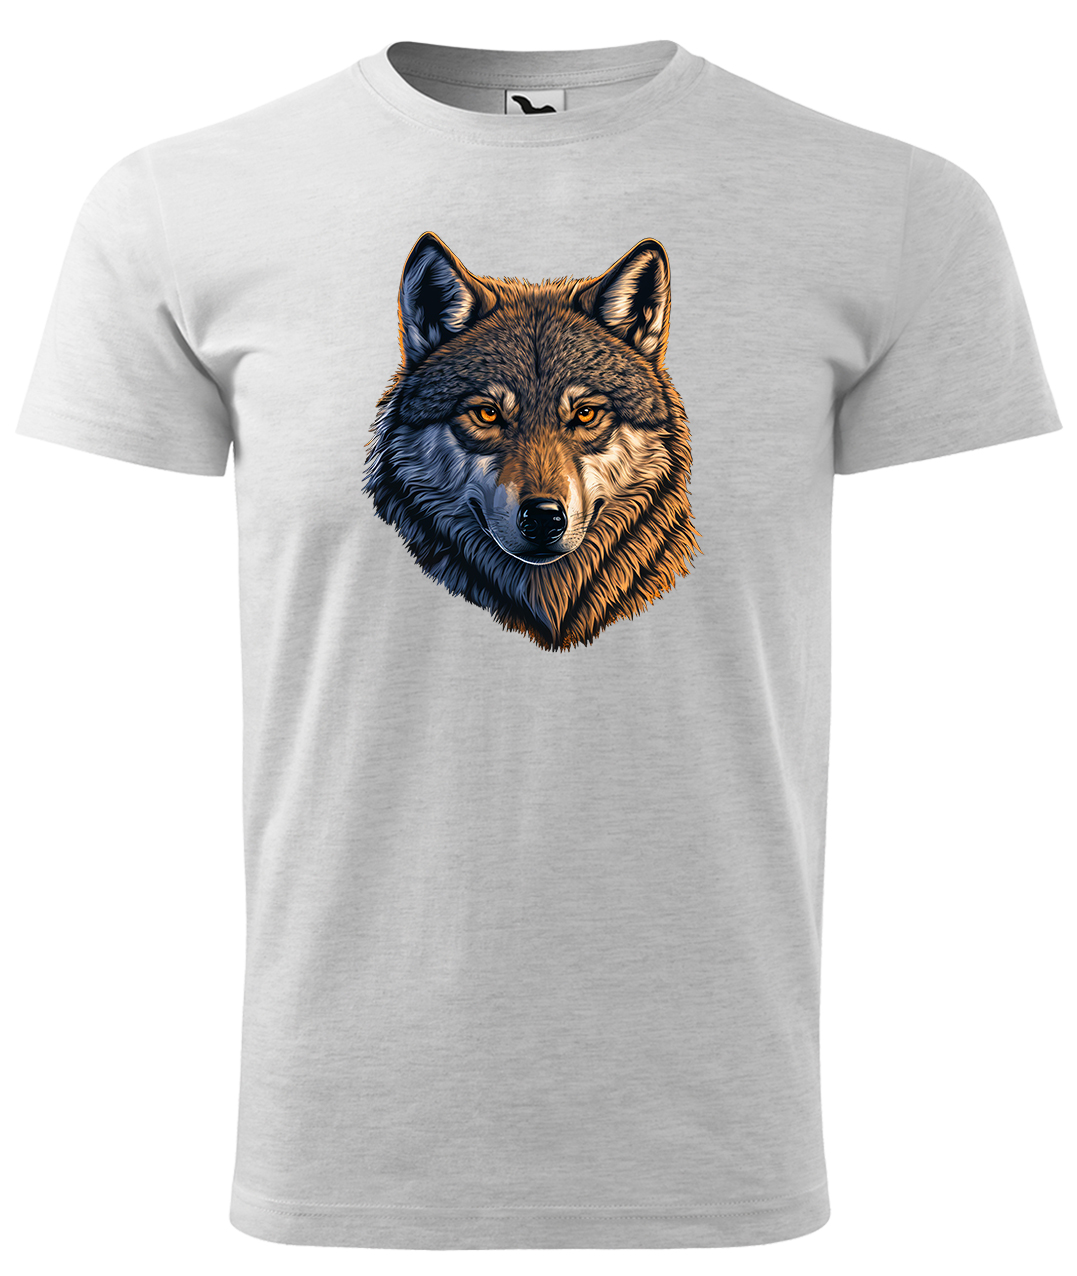 Dětské tričko s vlkem - Hlava vlka Velikost: 8 let / 134 cm, Barva: Světle šedý melír (03), Délka rukávu: Krátký rukáv